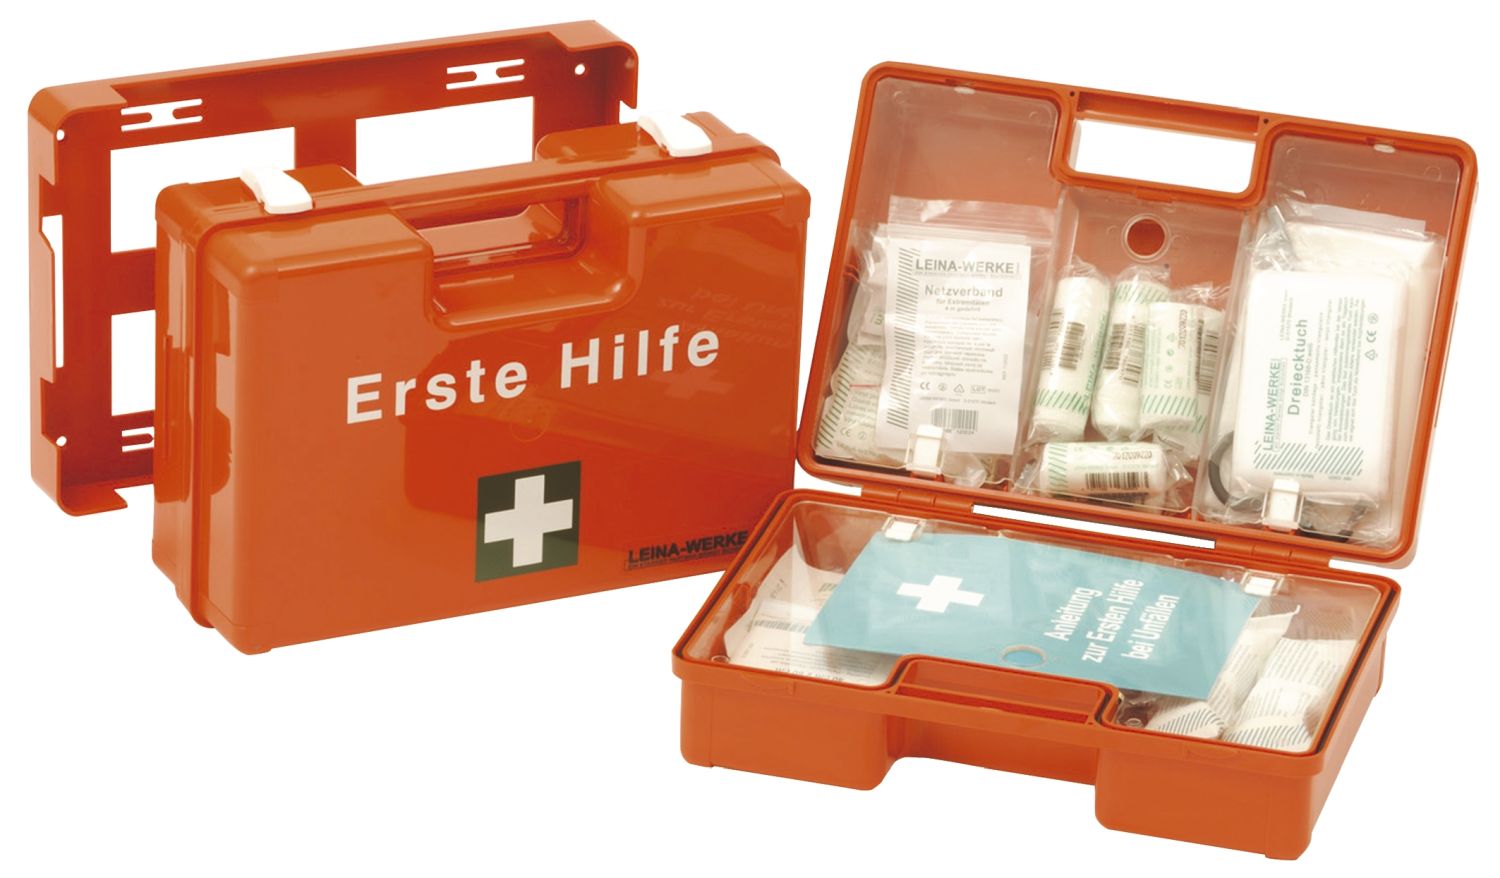 Erste-Hilfe-Koffer nach DIN 13157 SAN Leina-Werke 21033, orange